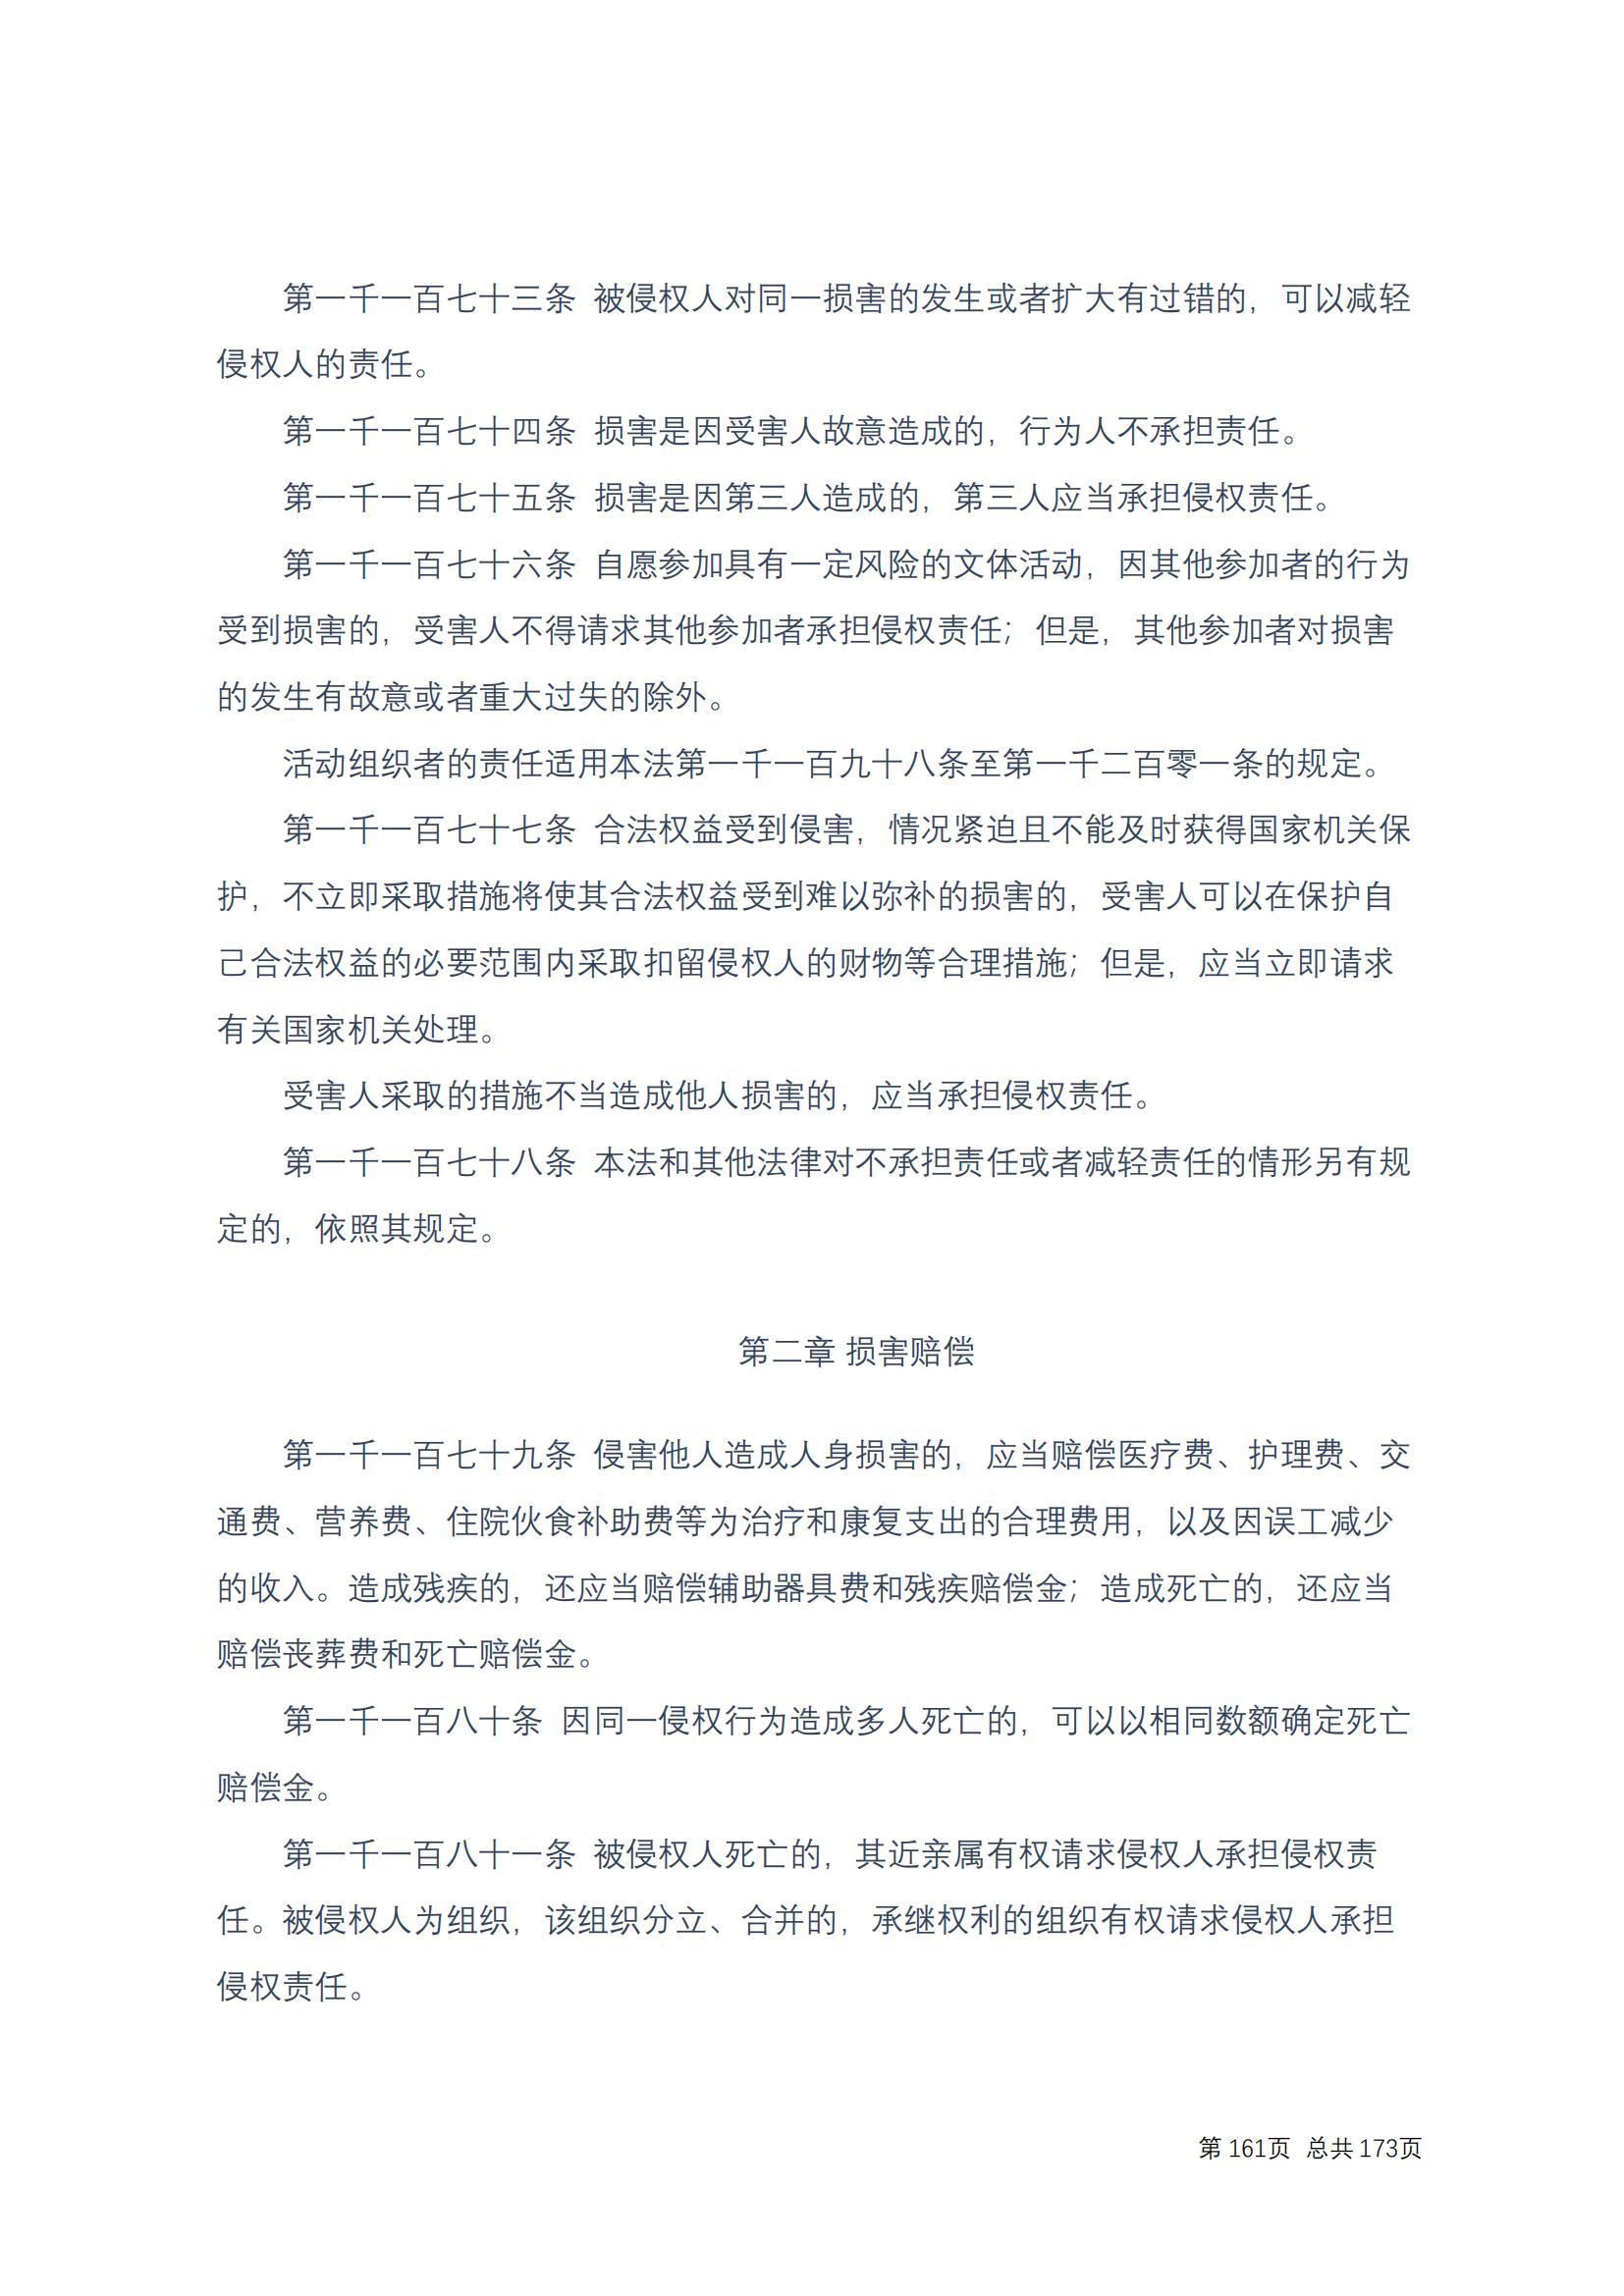 中华人民共和国民法典 修改过_160